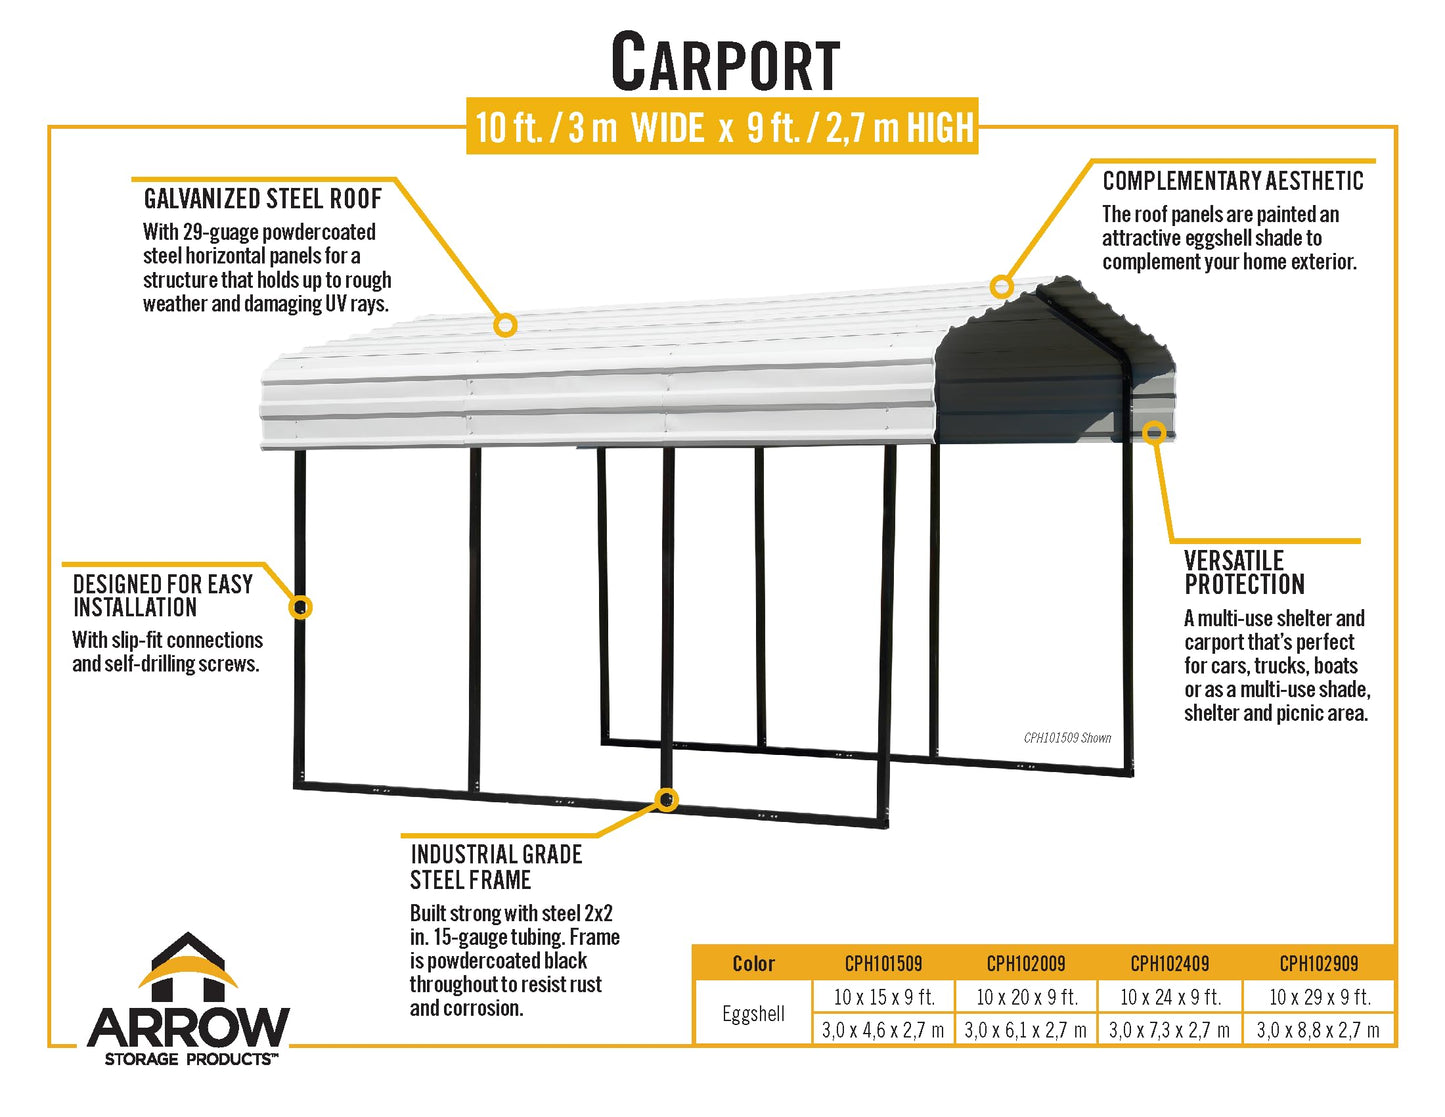 Arrow Carport, 10 ft. x 24 ft. x 9 ft. Eggshell 10' x 24' x 9'